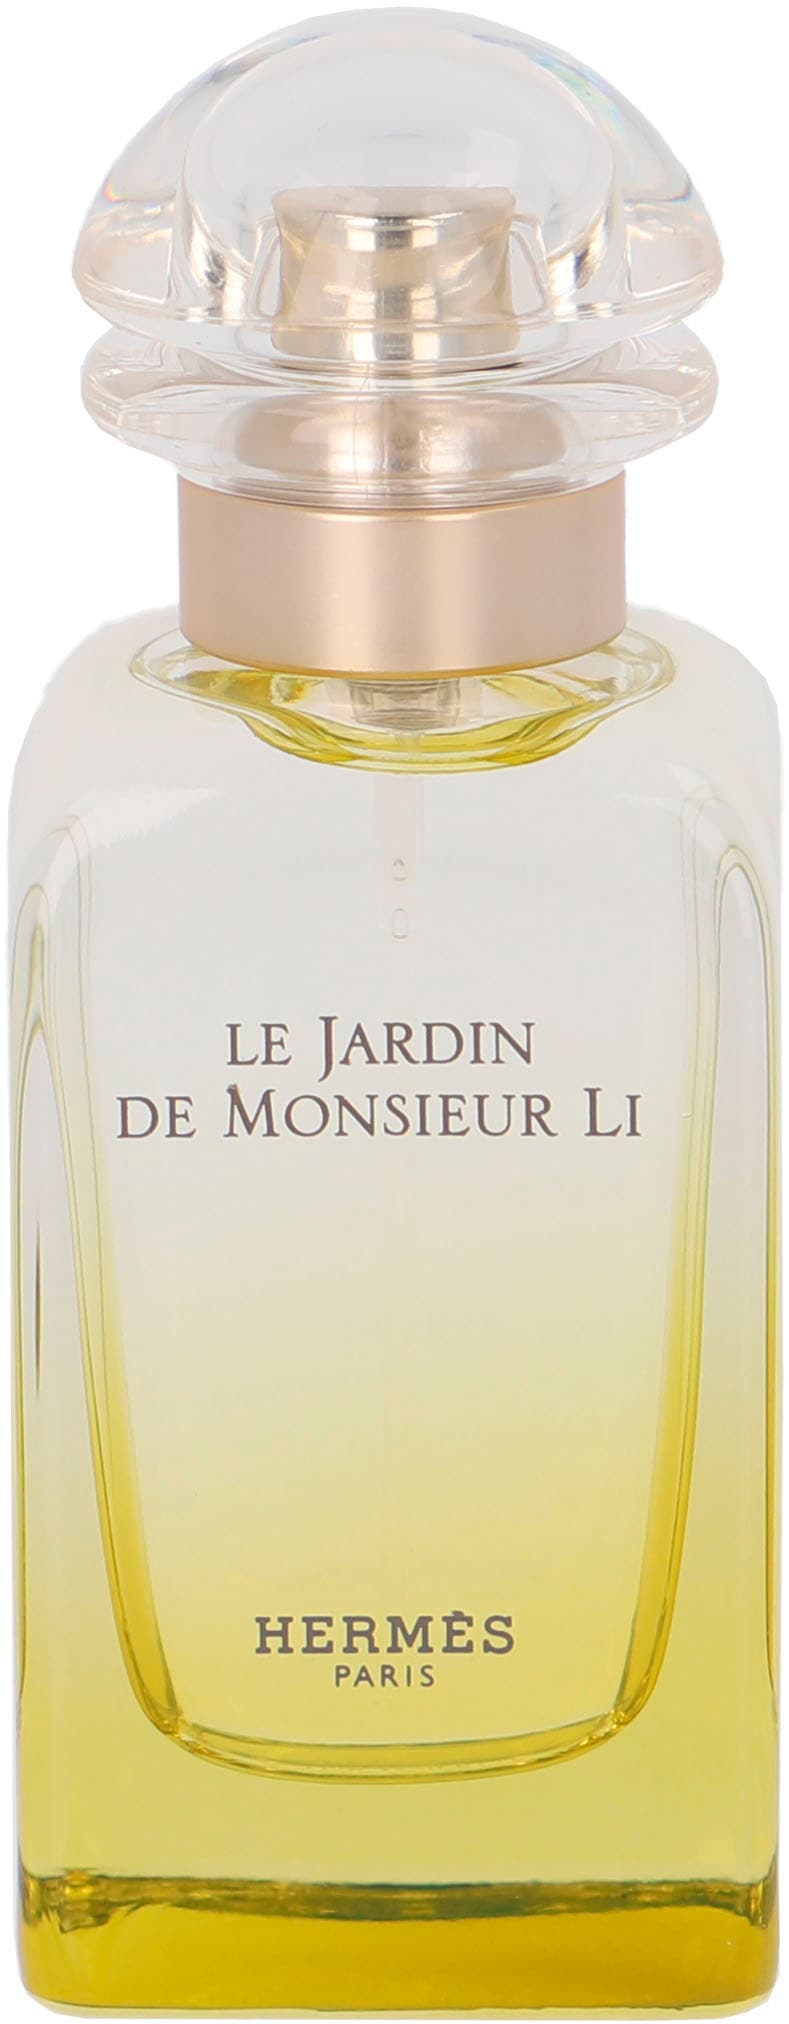 Hermes Le Jardin de Monsieur Li, 50 ml Eau de Toilette Spray für Damen